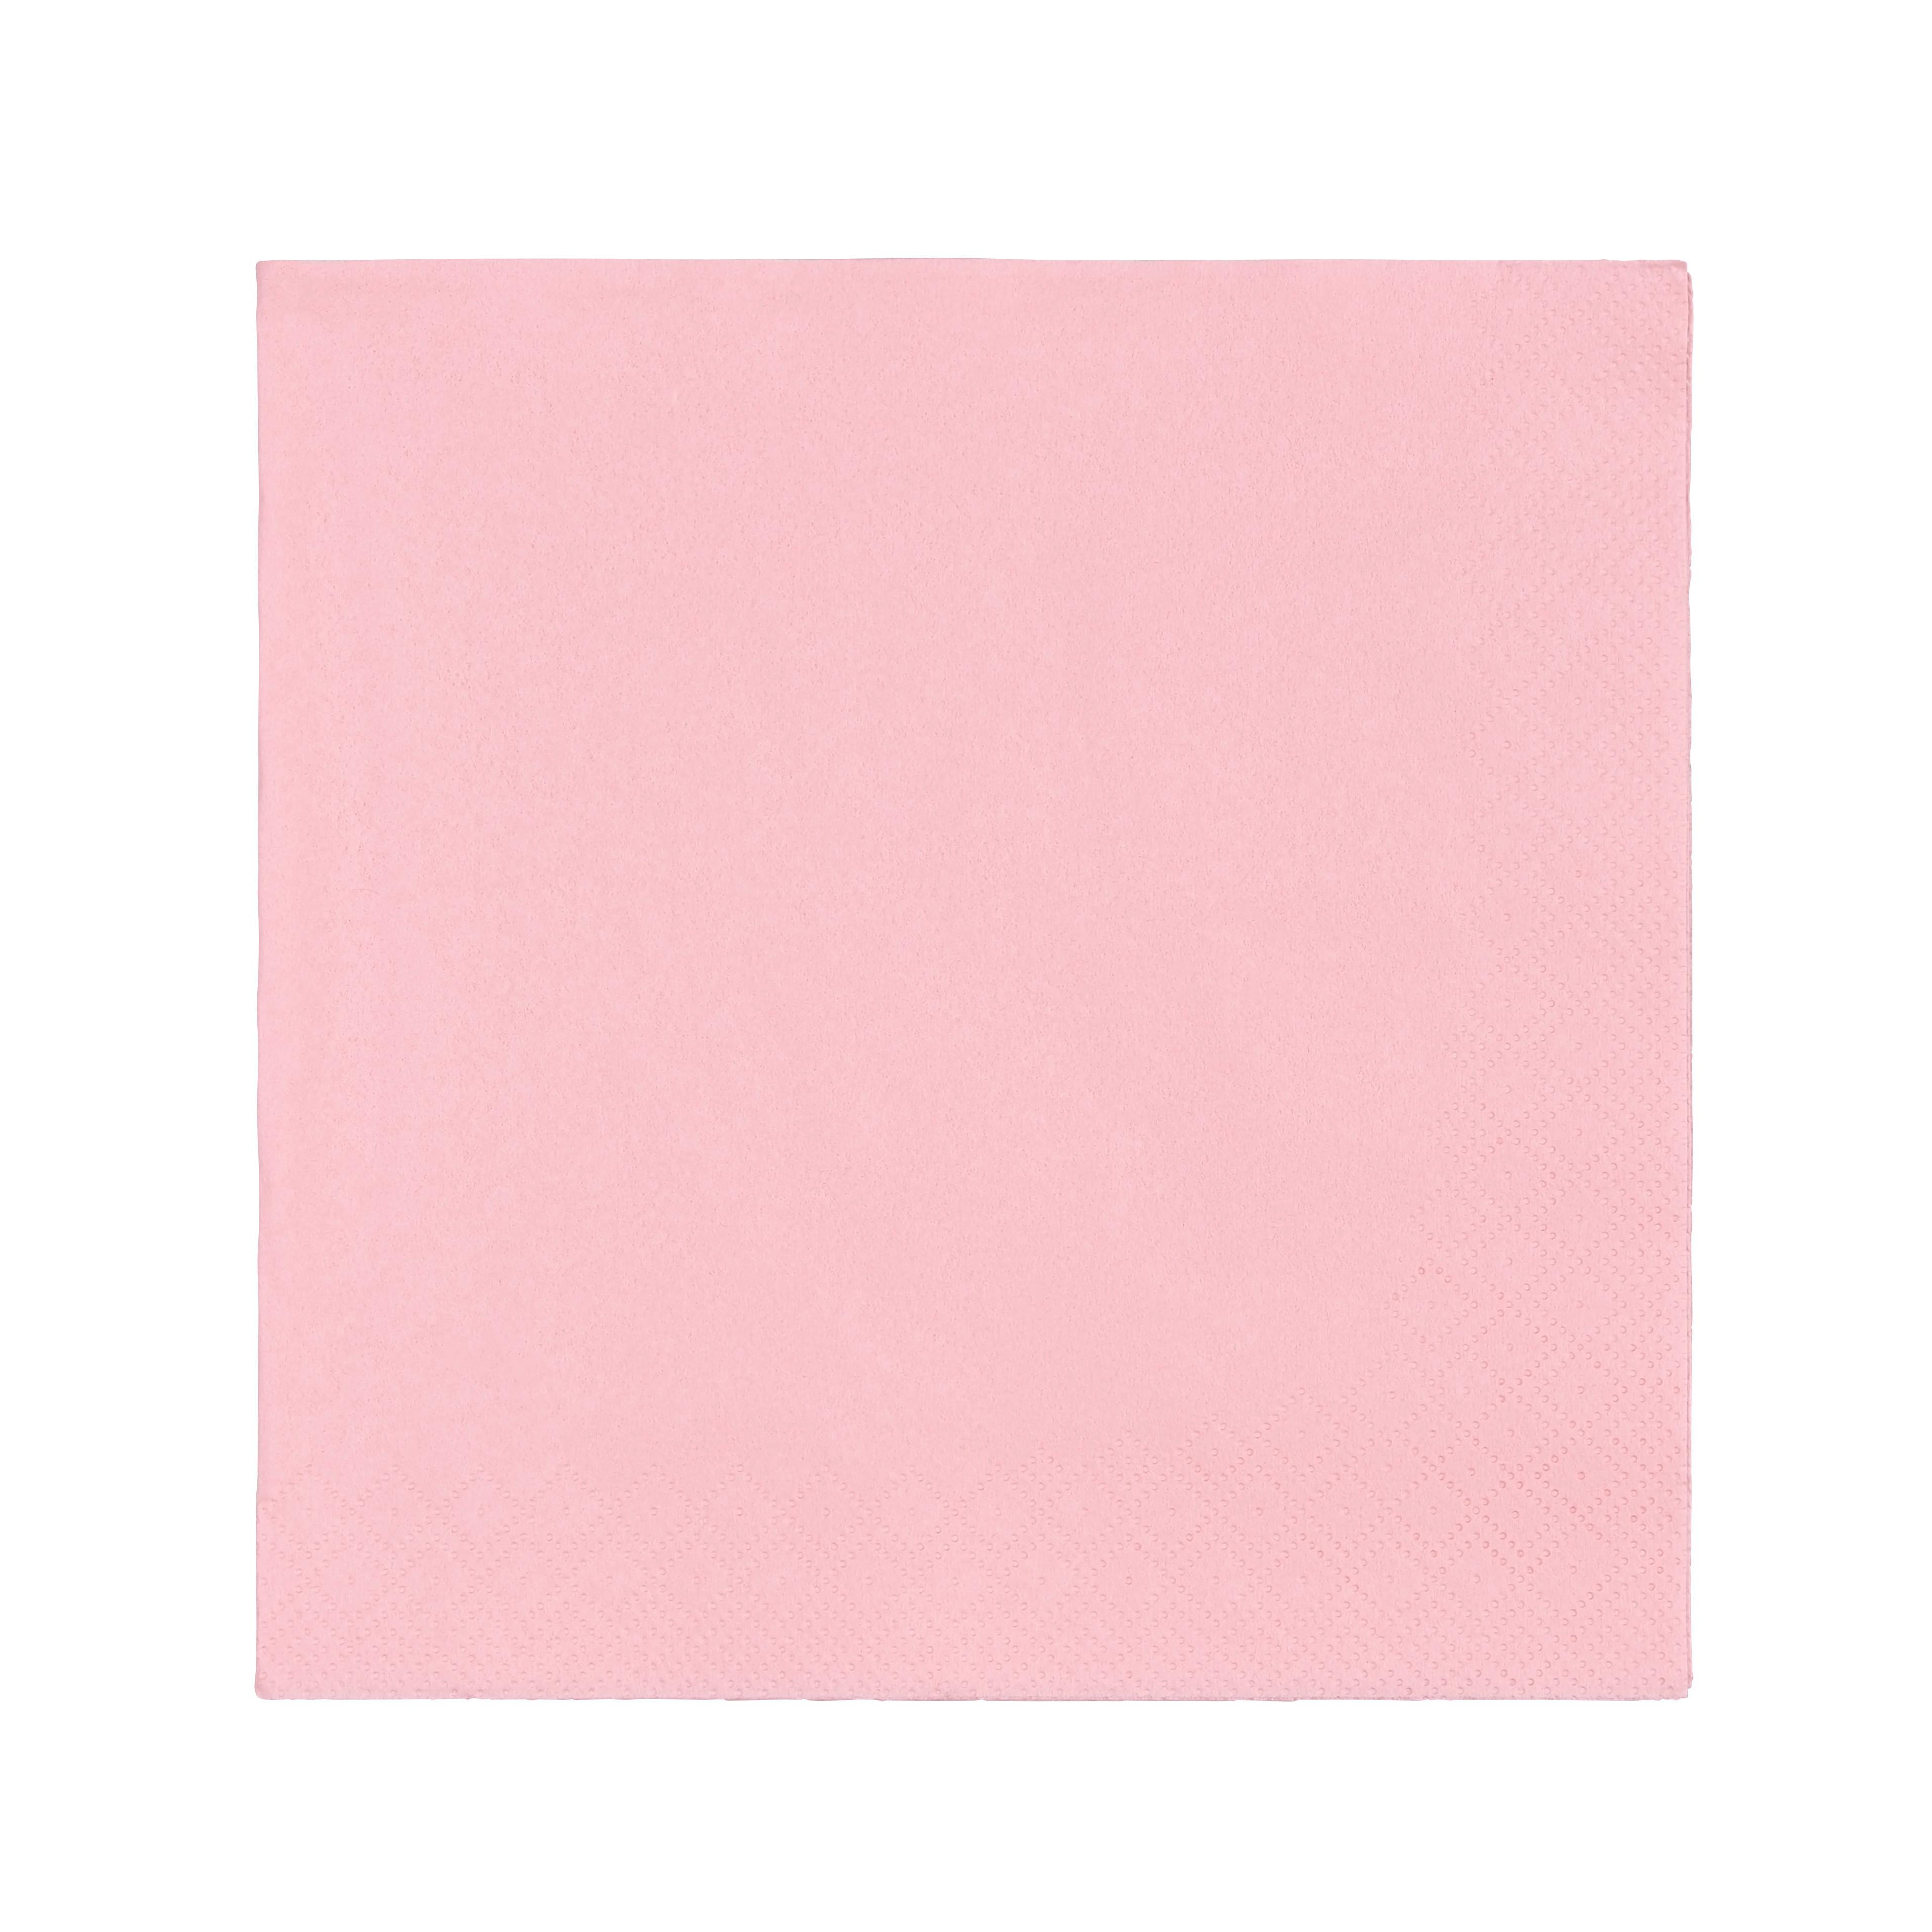 Serviette Lavenia Einfarbig Pink 50 Stk., 33x33 cm - Pink, MODERN, Papier (33/33cm) - Luca Bessoni